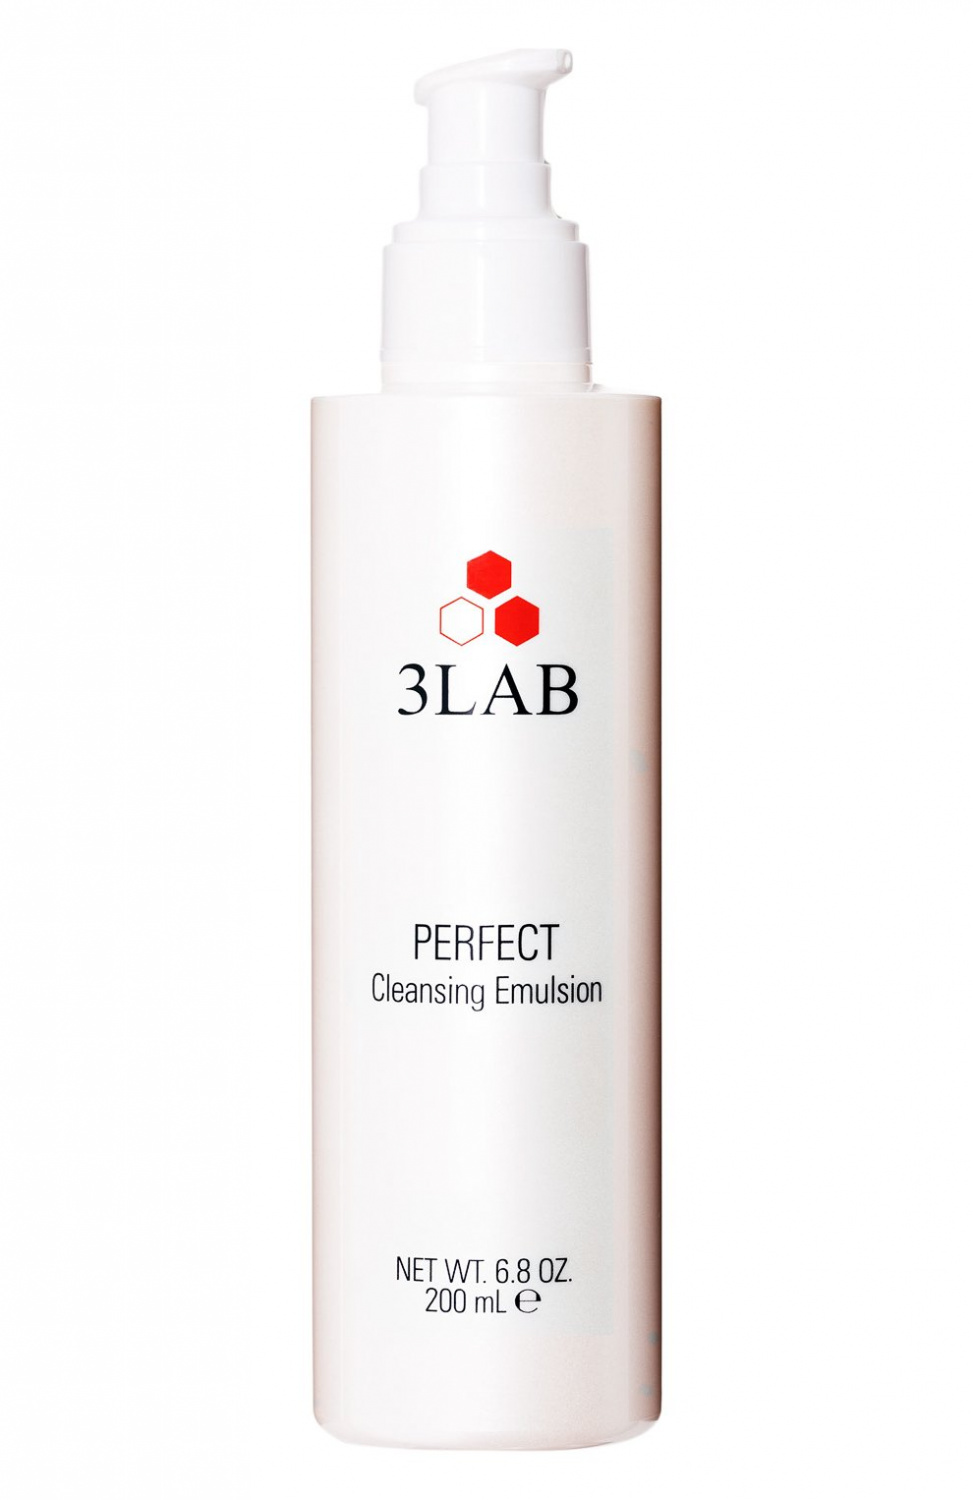 3LAB Perfect Cleansing Emulsion 200ml - интернет-магазин профессиональной косметики Spadream, изображение 37289